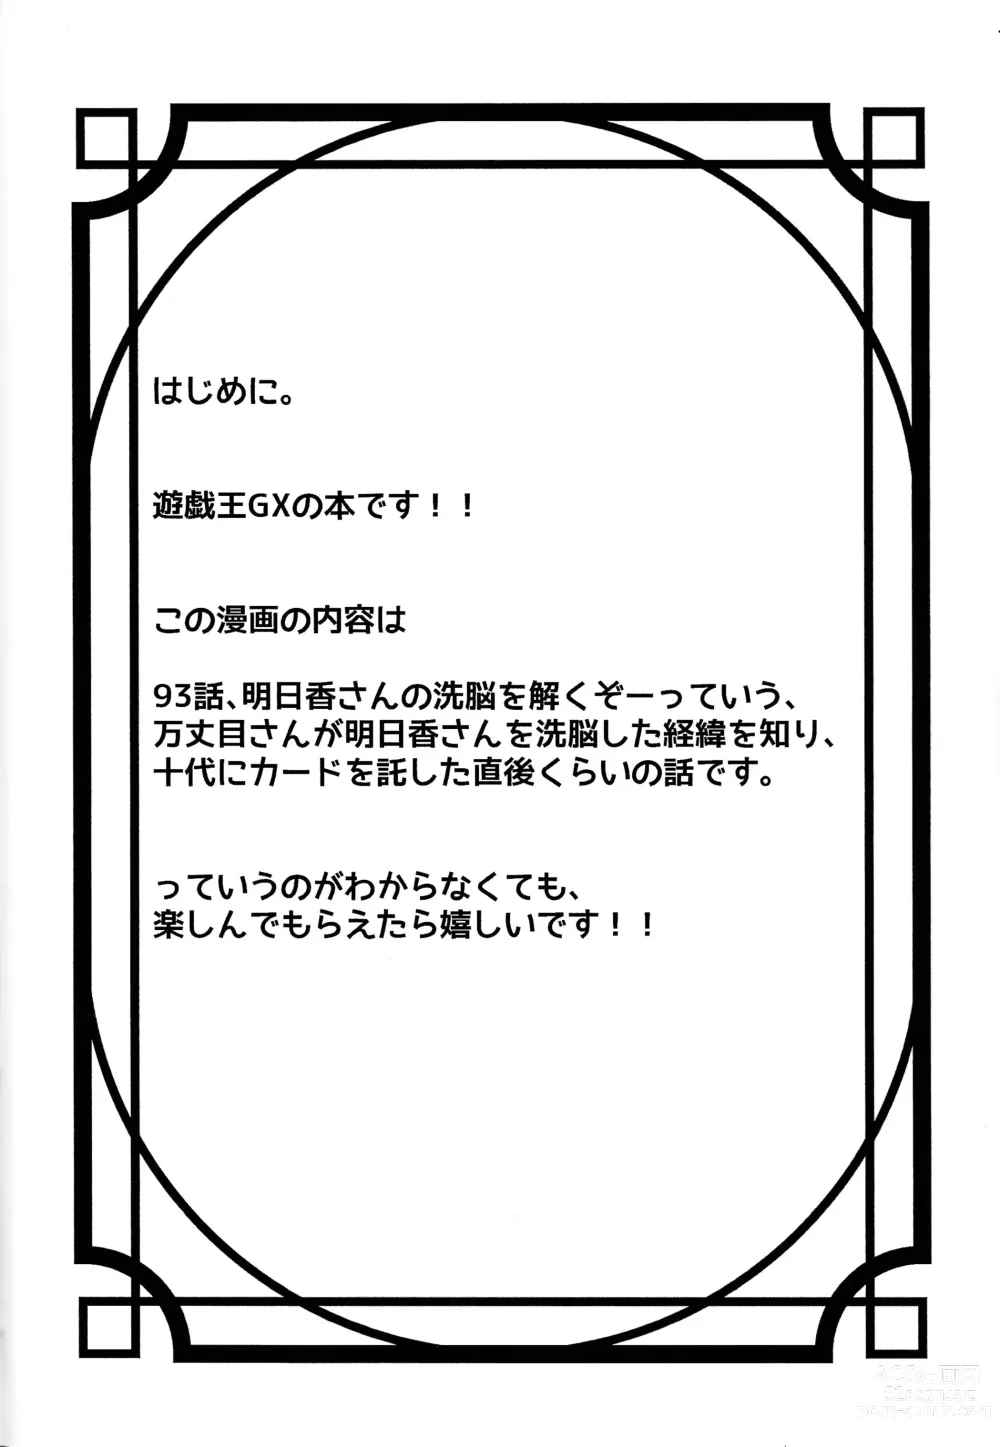 Page 3 of doujinshi Kuro no ore ga mata shiroku some rareyou to shite iru yodaga!?